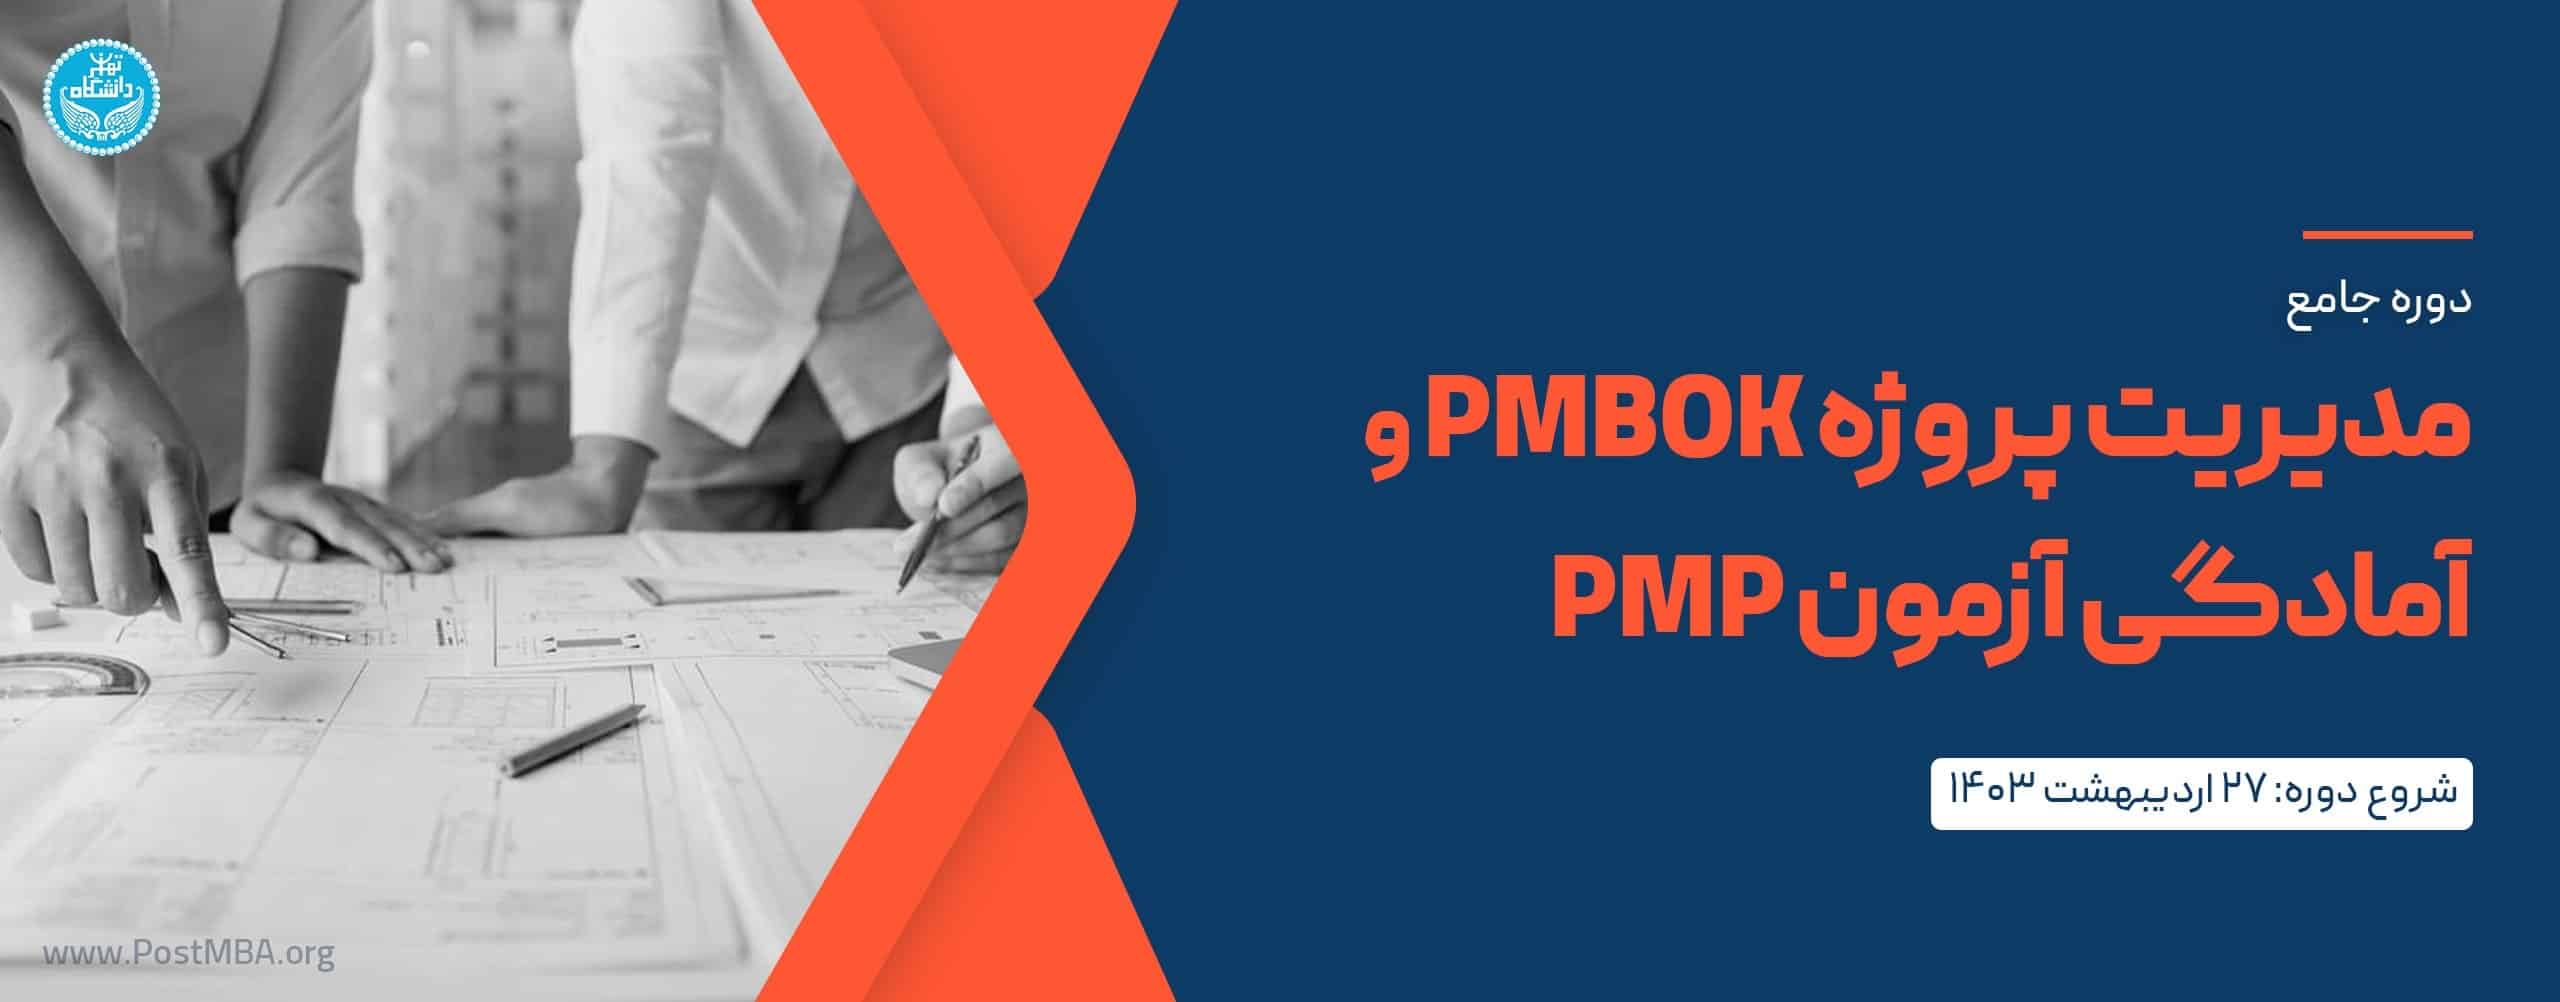 مدیریت پروژه PMBOK و آمادگی آزمون حرفه‌ای مدیریت پروژه (PMP) بر اساس استاندارد PMI